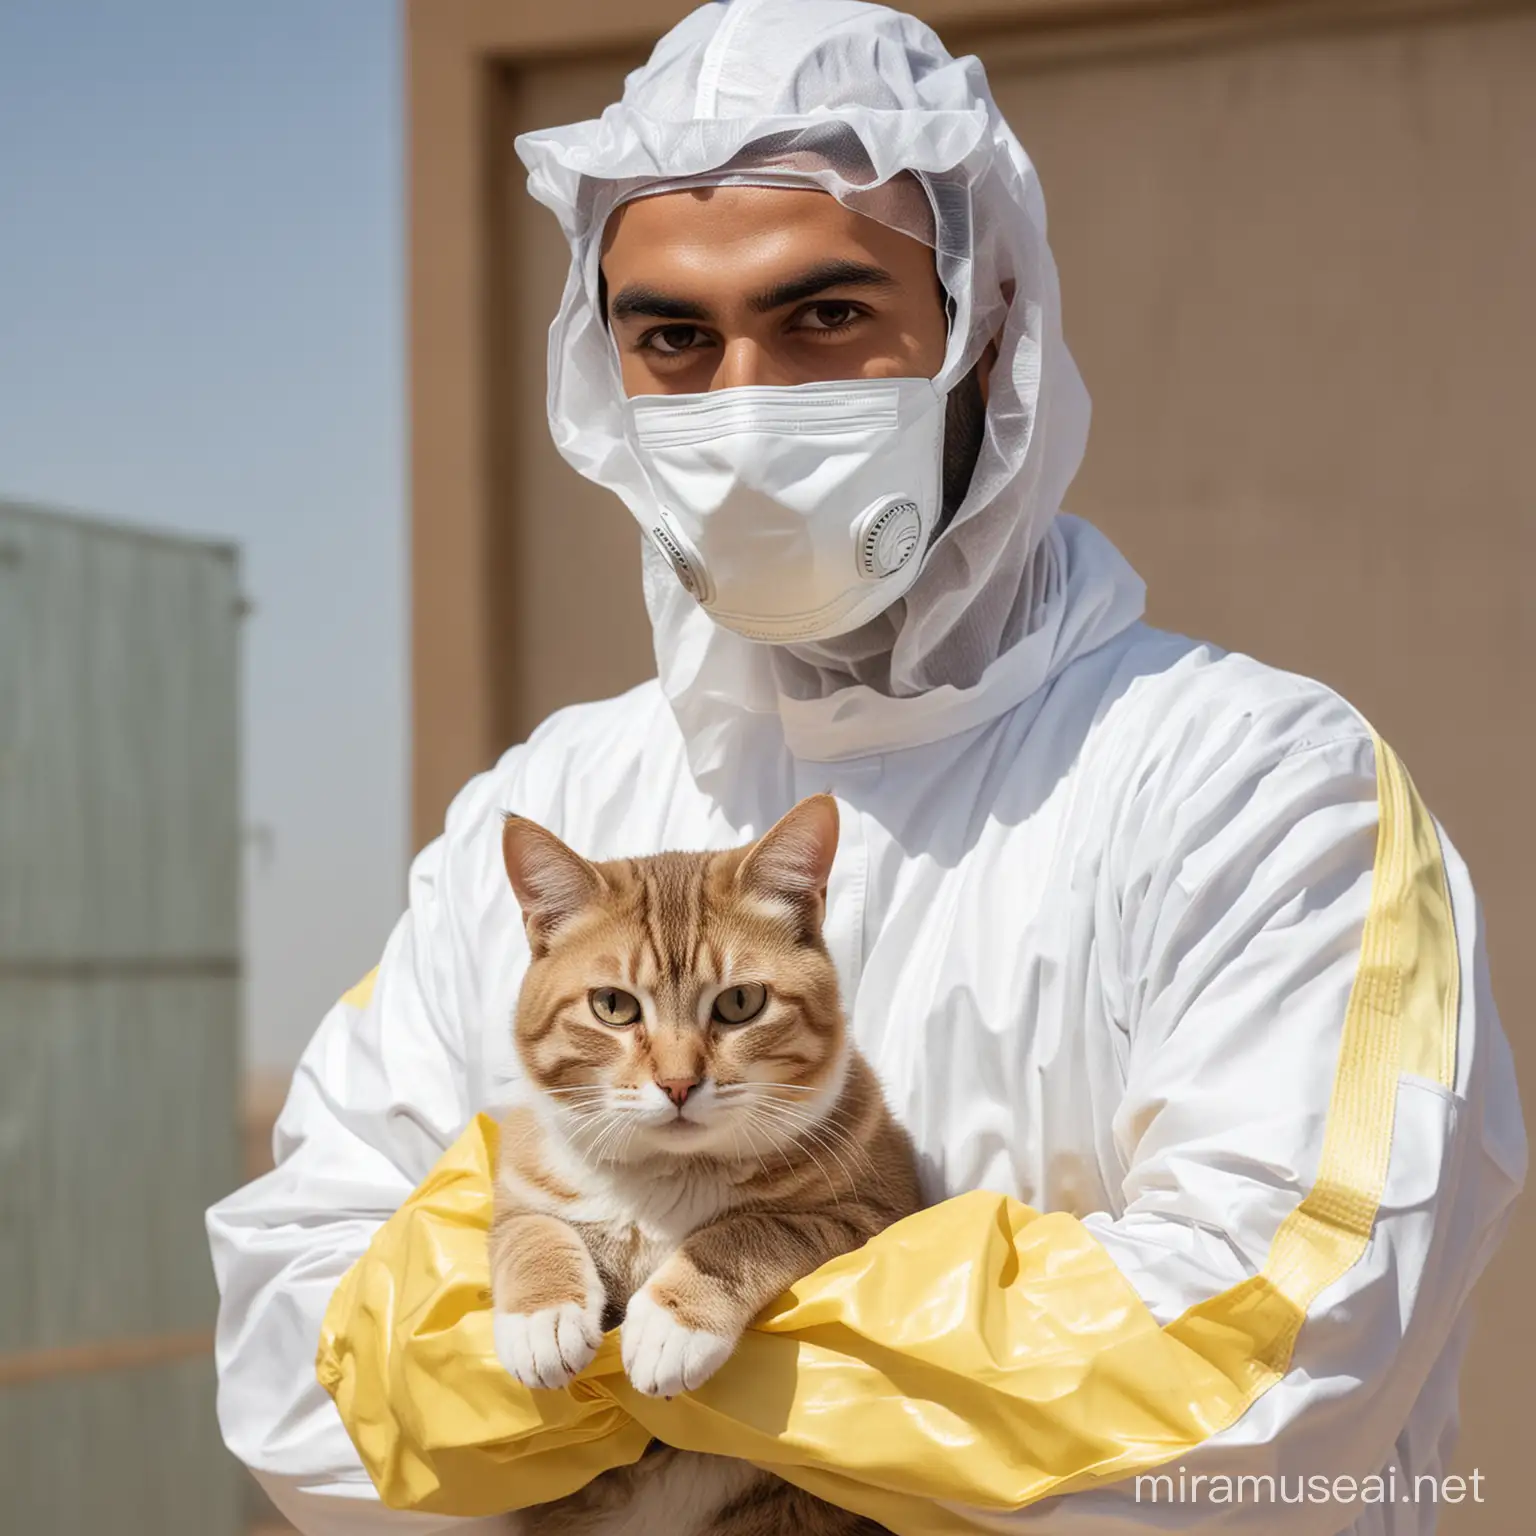 Arab Gentleman in Protective Hazmat Suit Cuddling a Cat